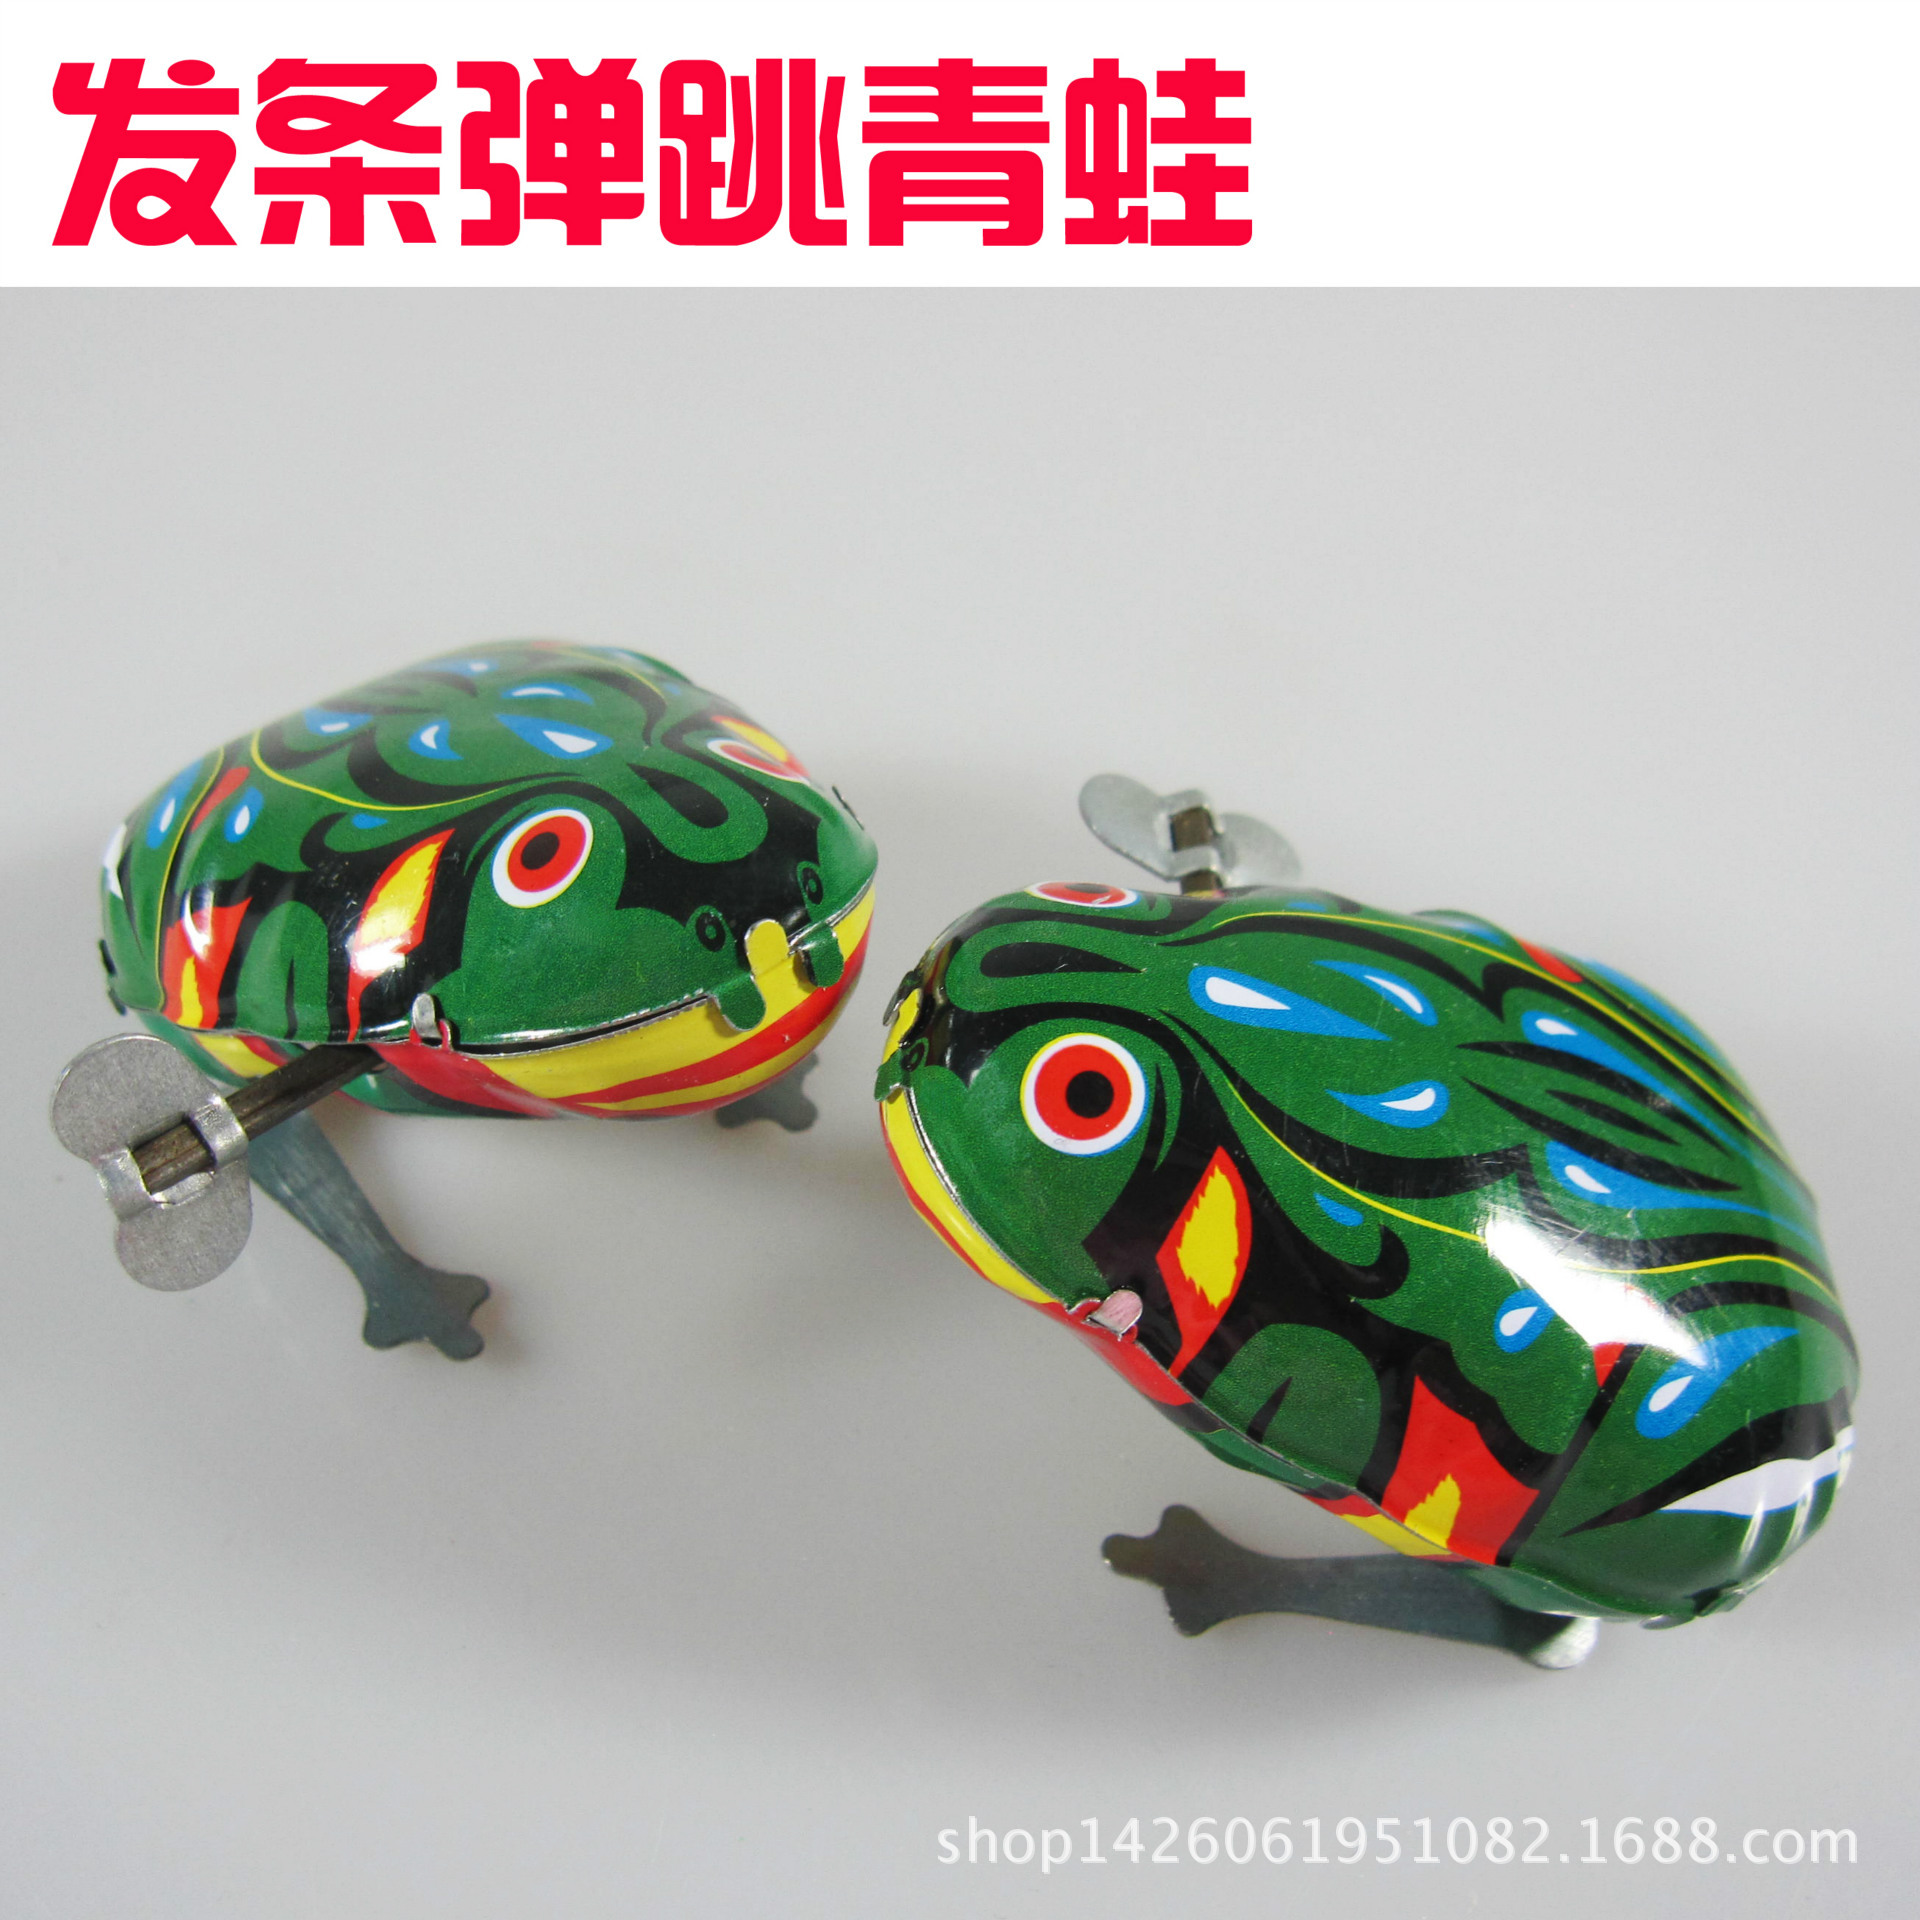 铁皮青蛙 上链小动物发条怀旧玩具水游泳绿青蛙厂家直***23050